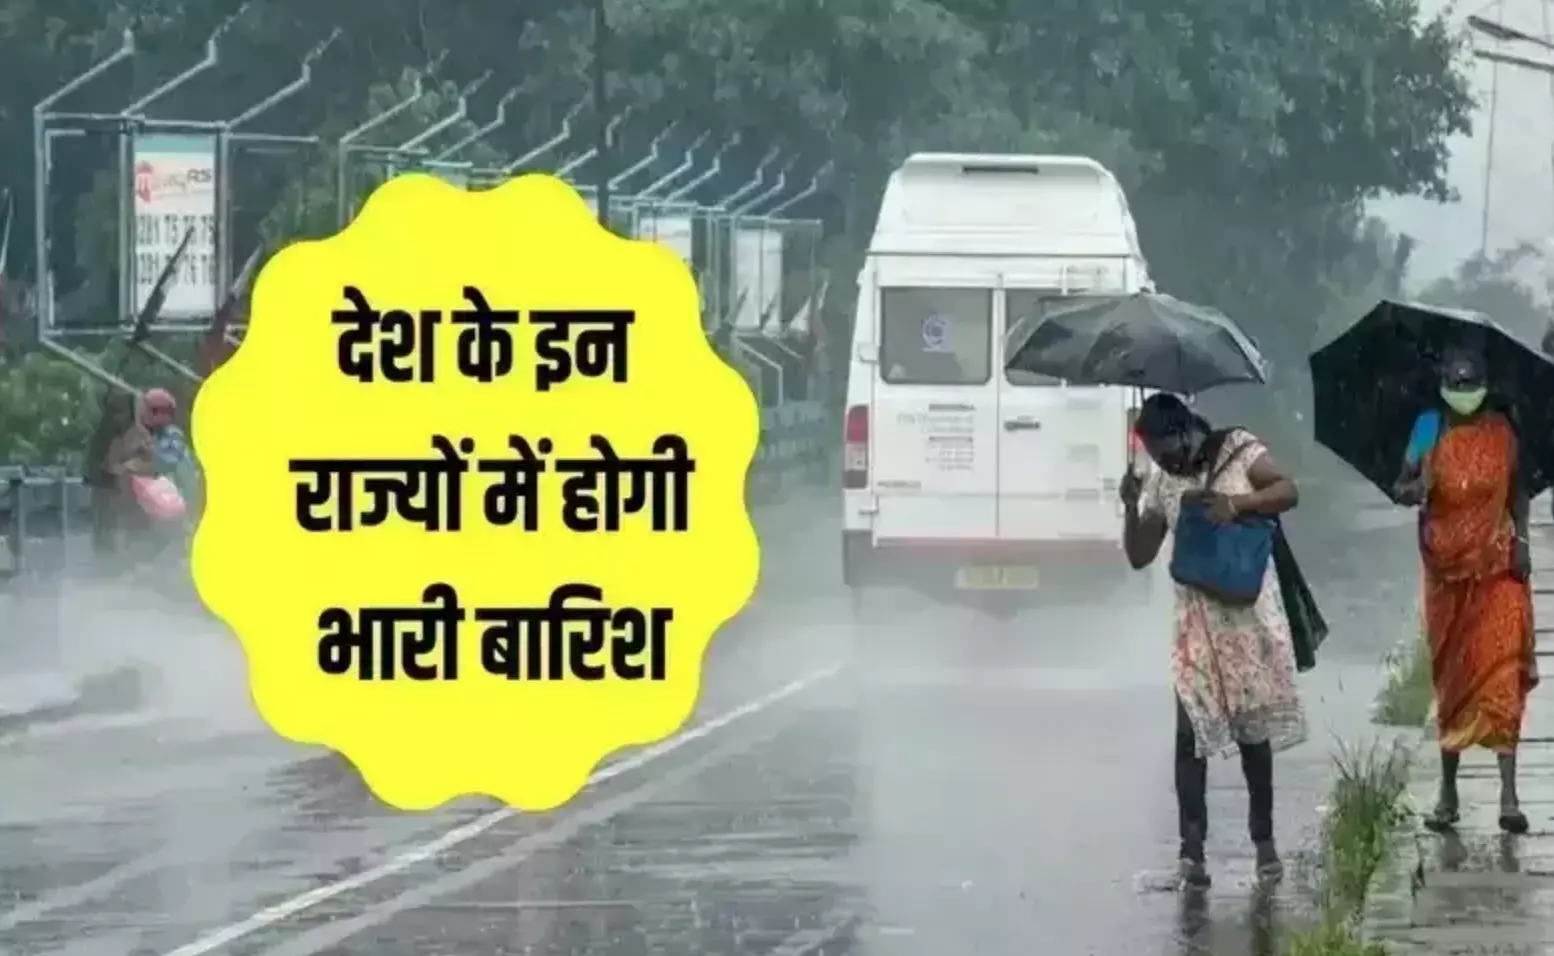 भारी बारिश से हाहाकार! 19 लोगों की मौत; हिमाचल, पंजाब, दिल्ली में भारी बारिश का अलर्ट, मौसम विभाग ने दी ये चेतावनी